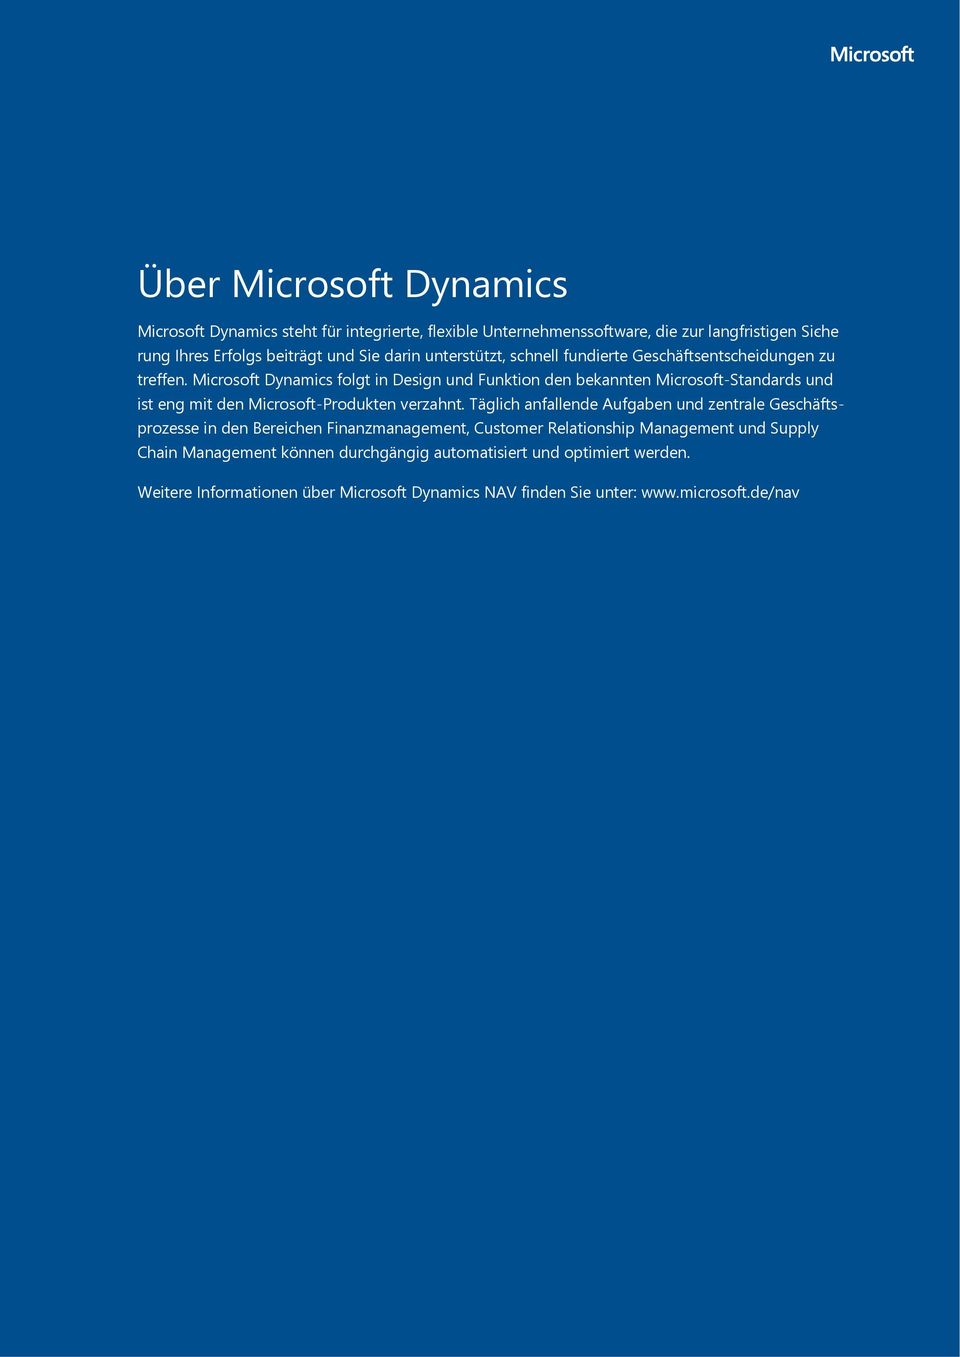 Microsoft Dynamics folgt in Design und Funktion den bekannten Microsoft-Standards und ist eng mit den Microsoft-Produkten verzahnt.